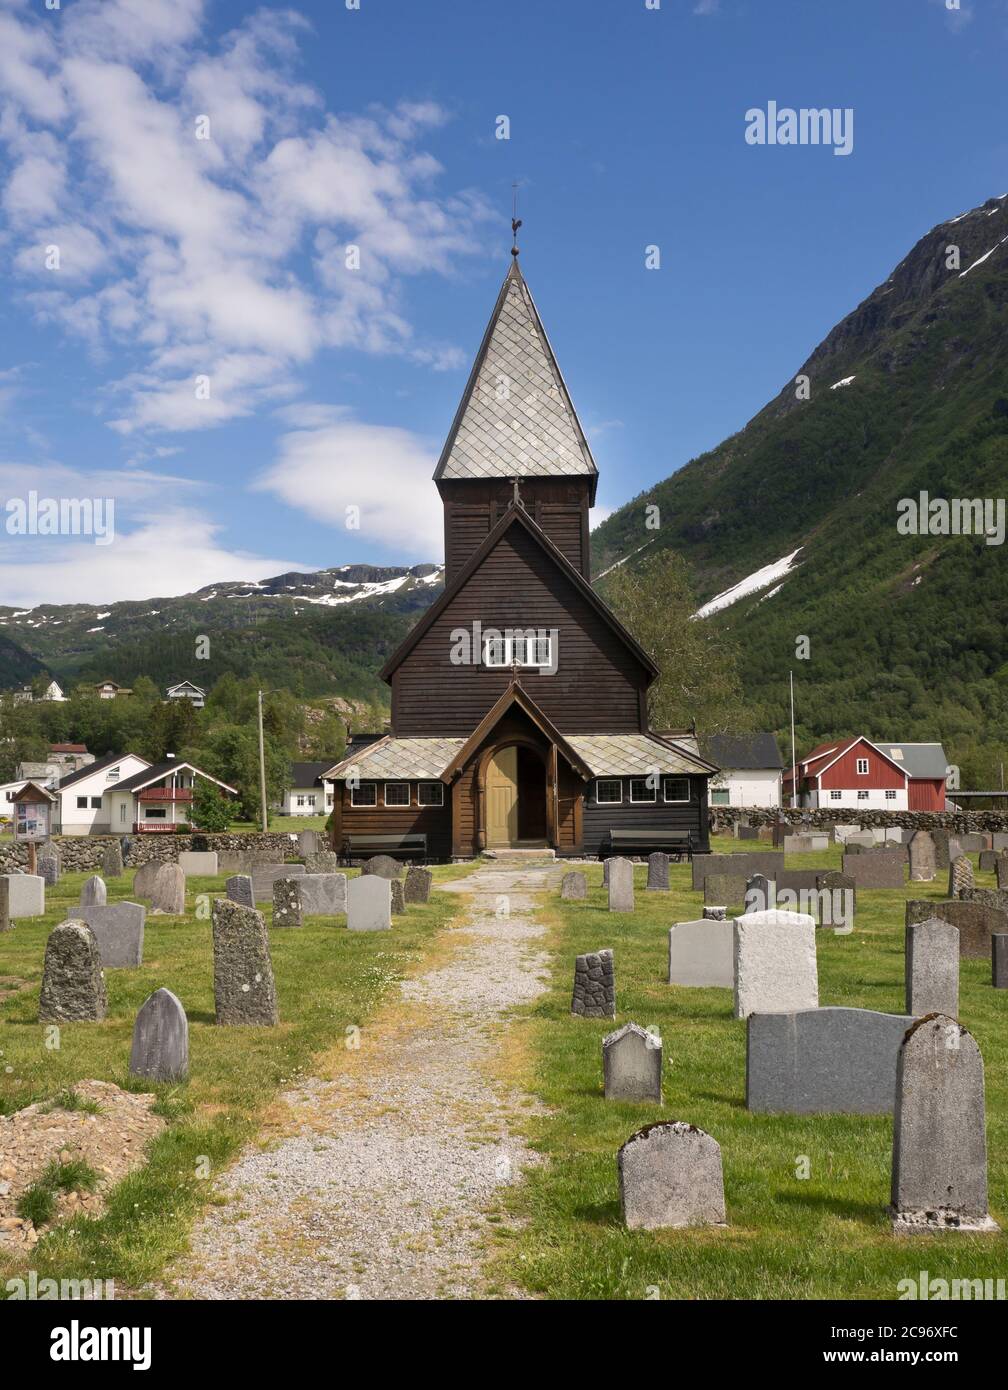 Røldal Stave Iglesia dic en un valle en el oeste de Noruega que data de CA 1250, exterior con cementerio y hermoso paisaje Foto de stock